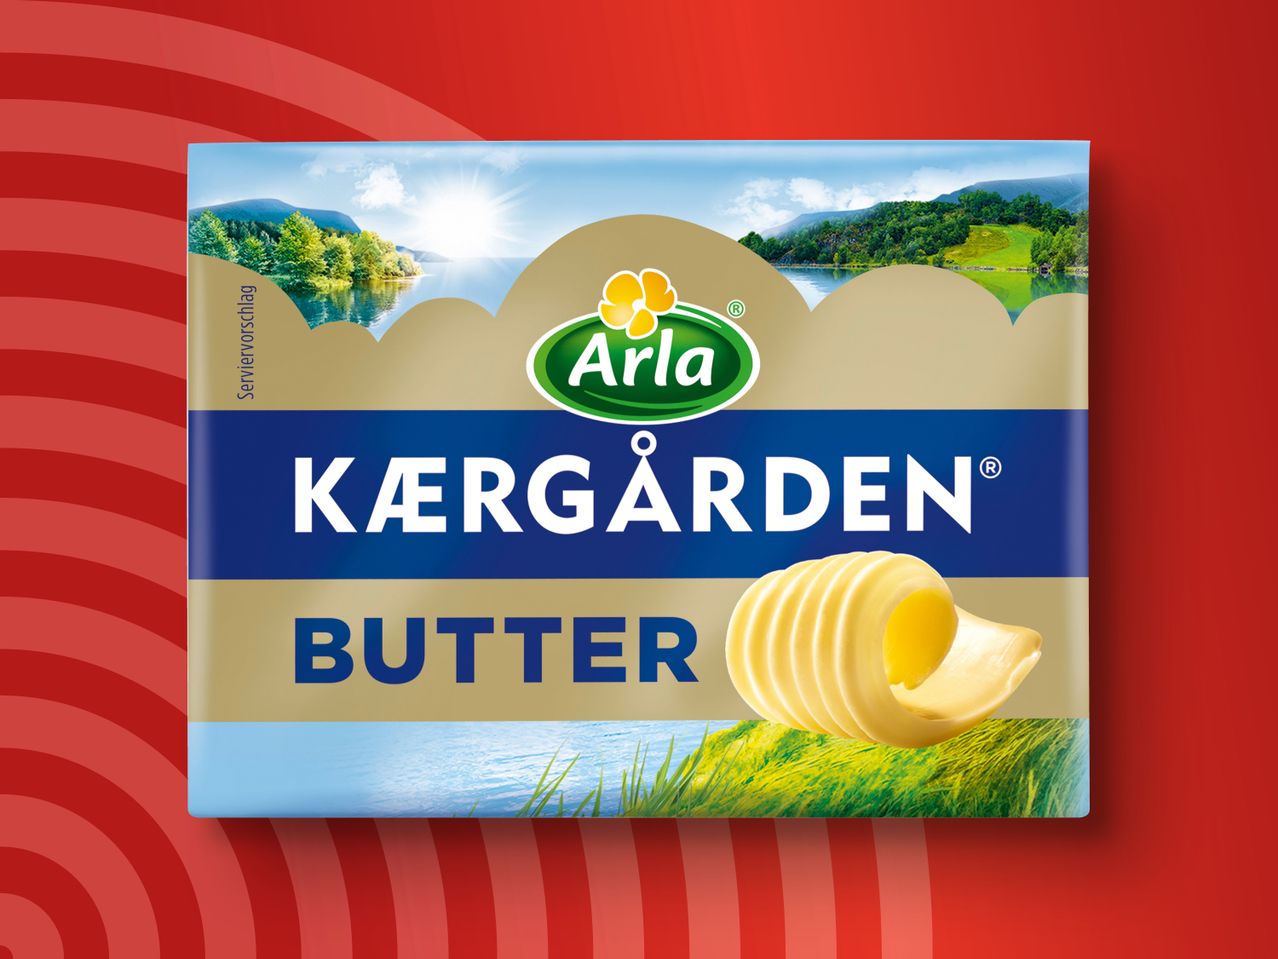 Butter Kaergarden Arla